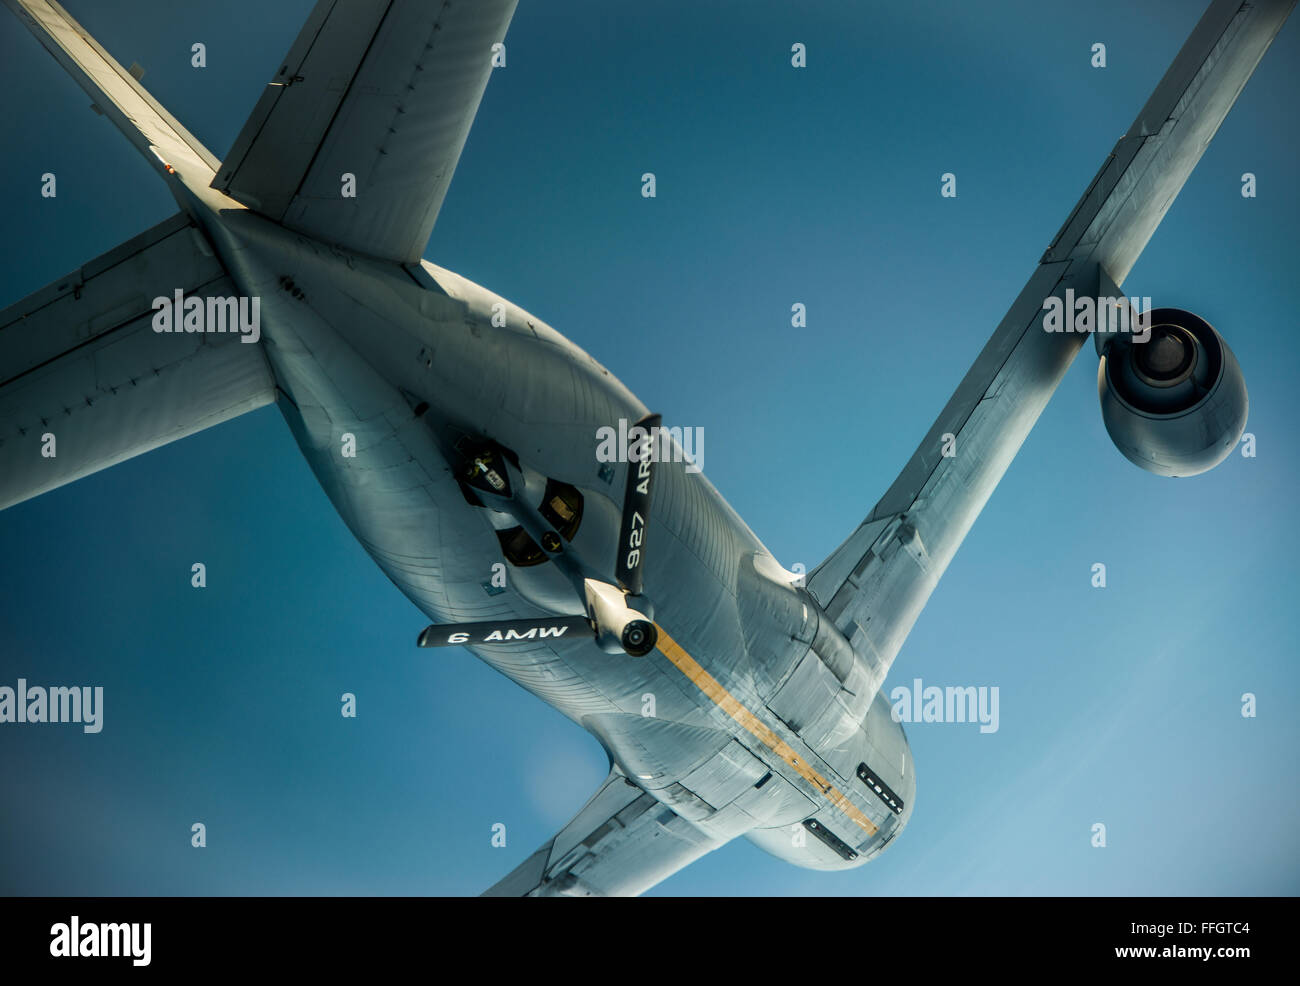 Un 927th Wing de ravitaillement en vol KC-135 Stratotanker monte au-dessus après avoir fait le plein d'un C-17 Globemaster III, 1 juillet 2014. Le C-17 s'appuie sur aerial refueling à remplir des missions à longue distance dans et hors du théâtre des opérations. Banque D'Images